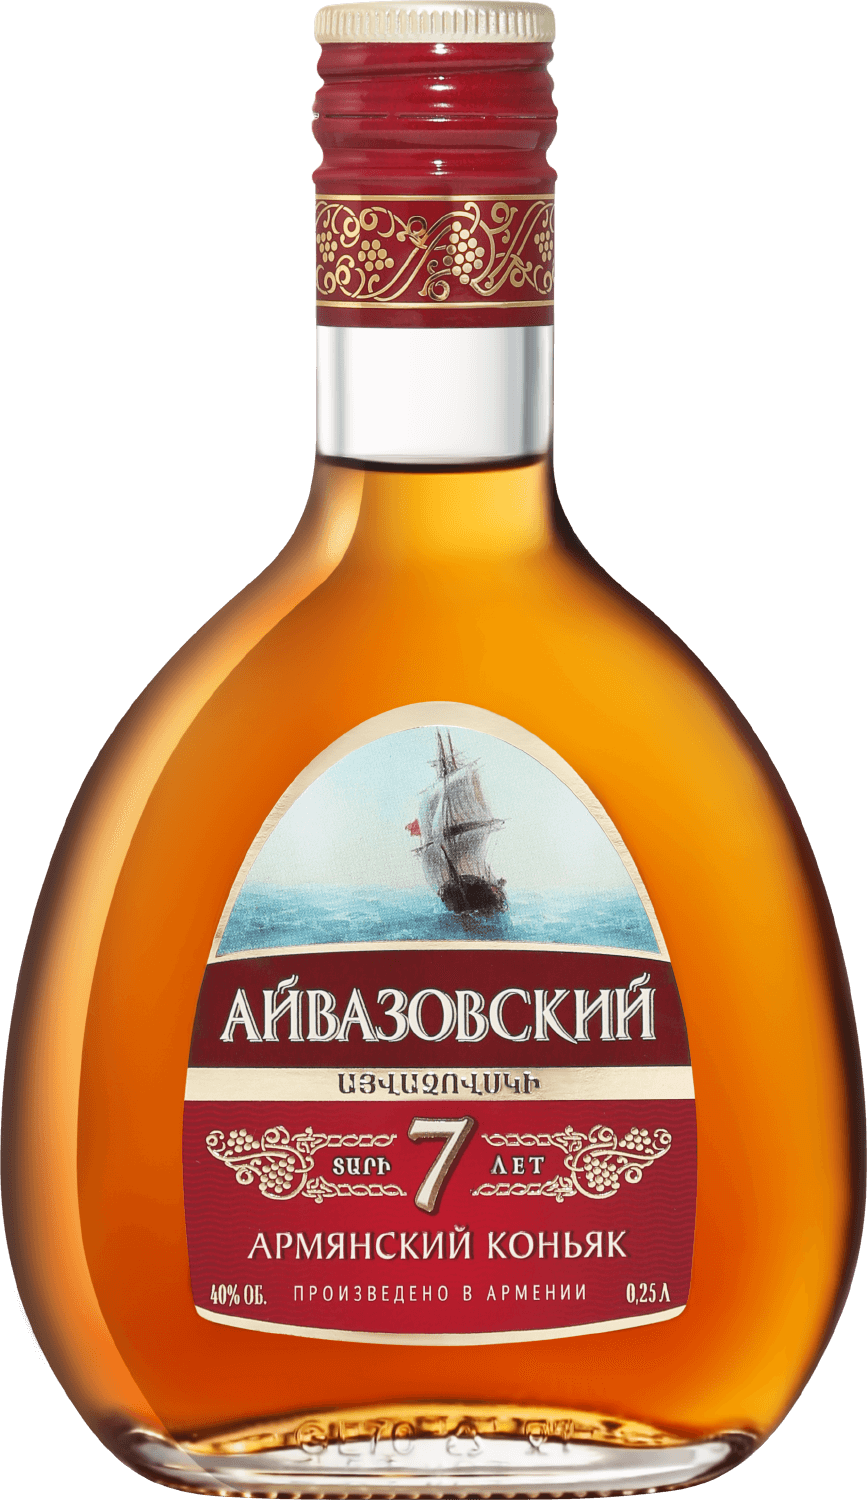 Aivazovsky Armenian Brandy 7 Y.O. aivazovsky armenian brandy 7 y o